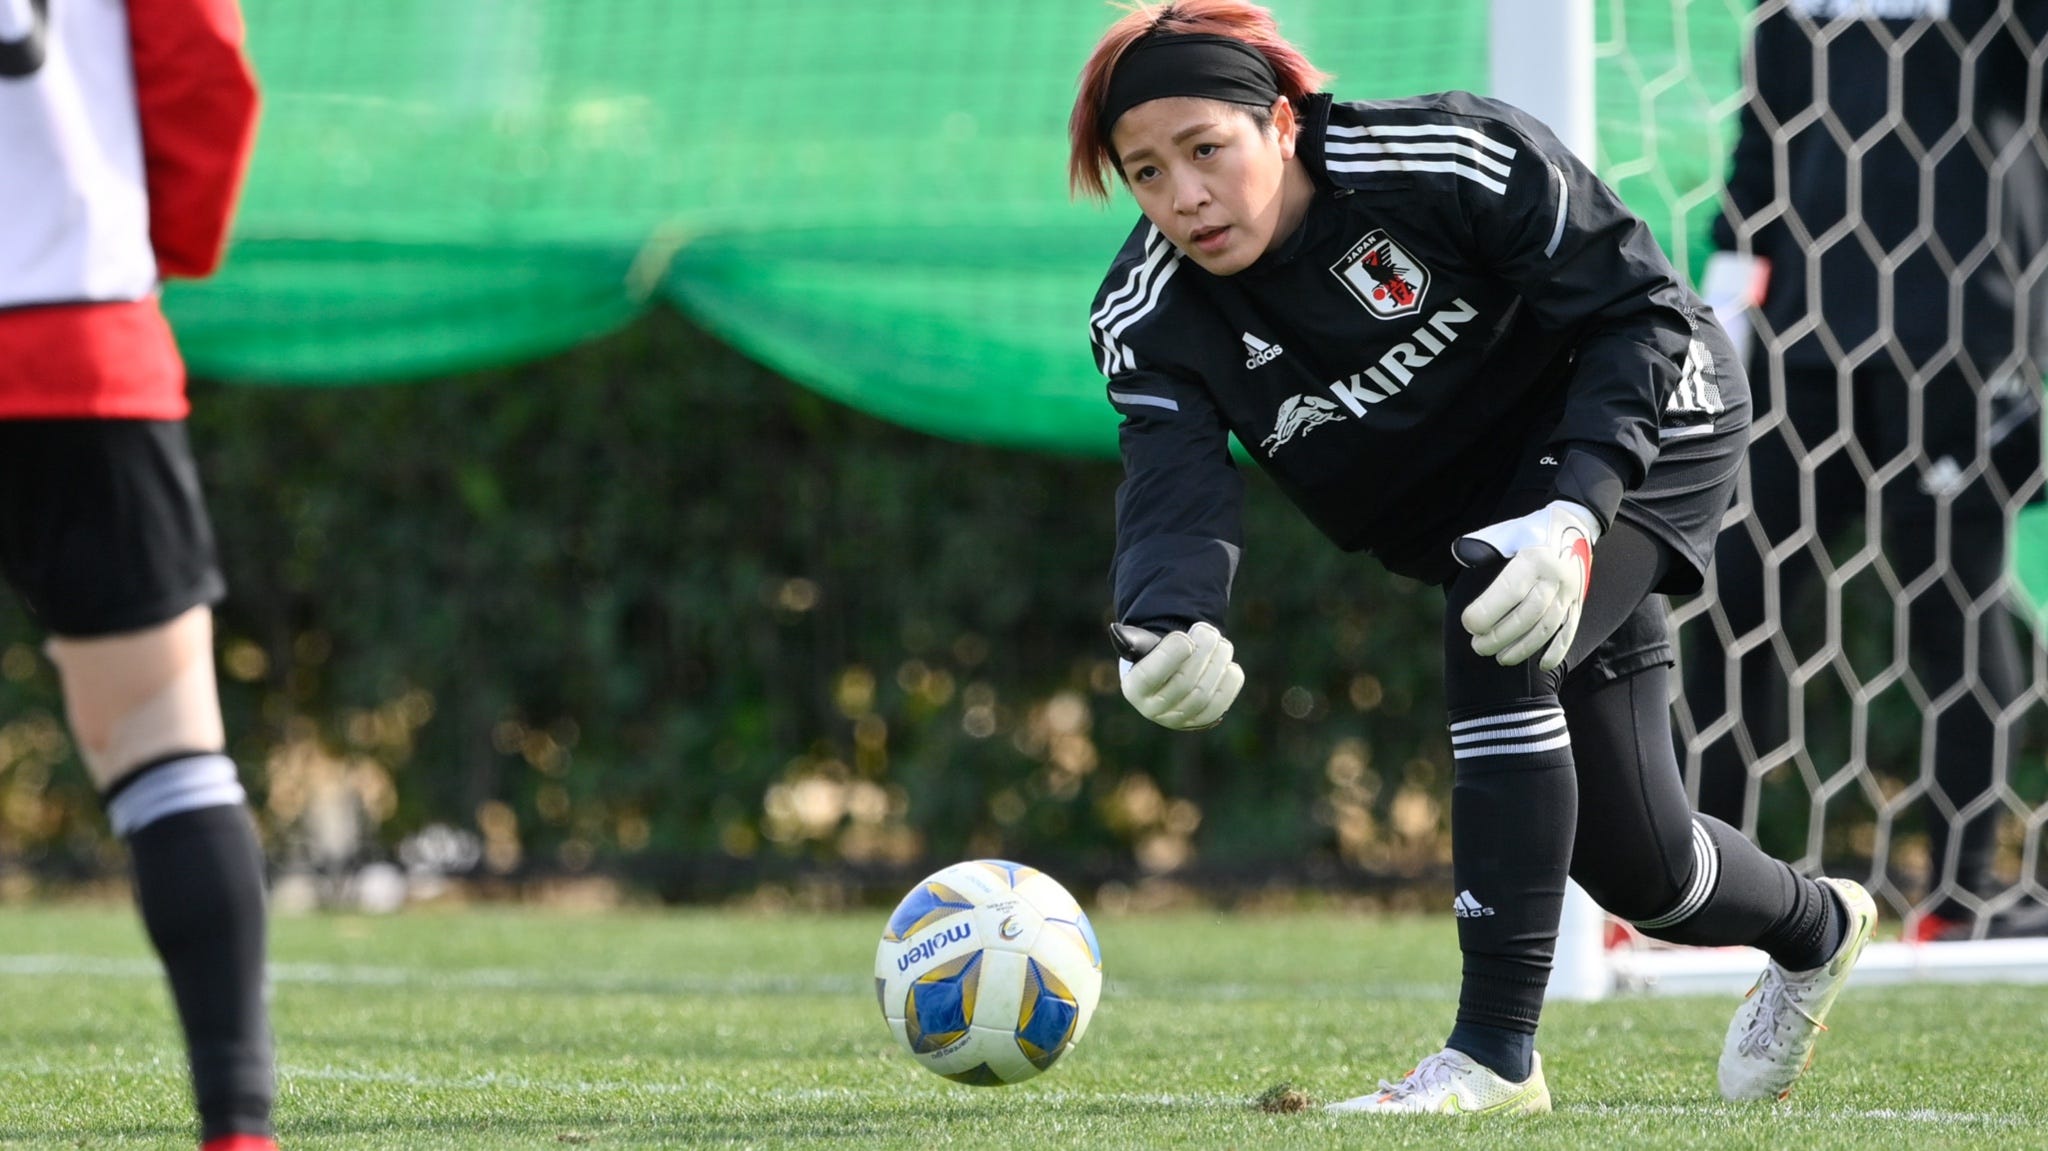 Jリーグにいる一番のお手本 なでしこの守護神 池田咲紀子が目指したgkとは Goal Com 日本